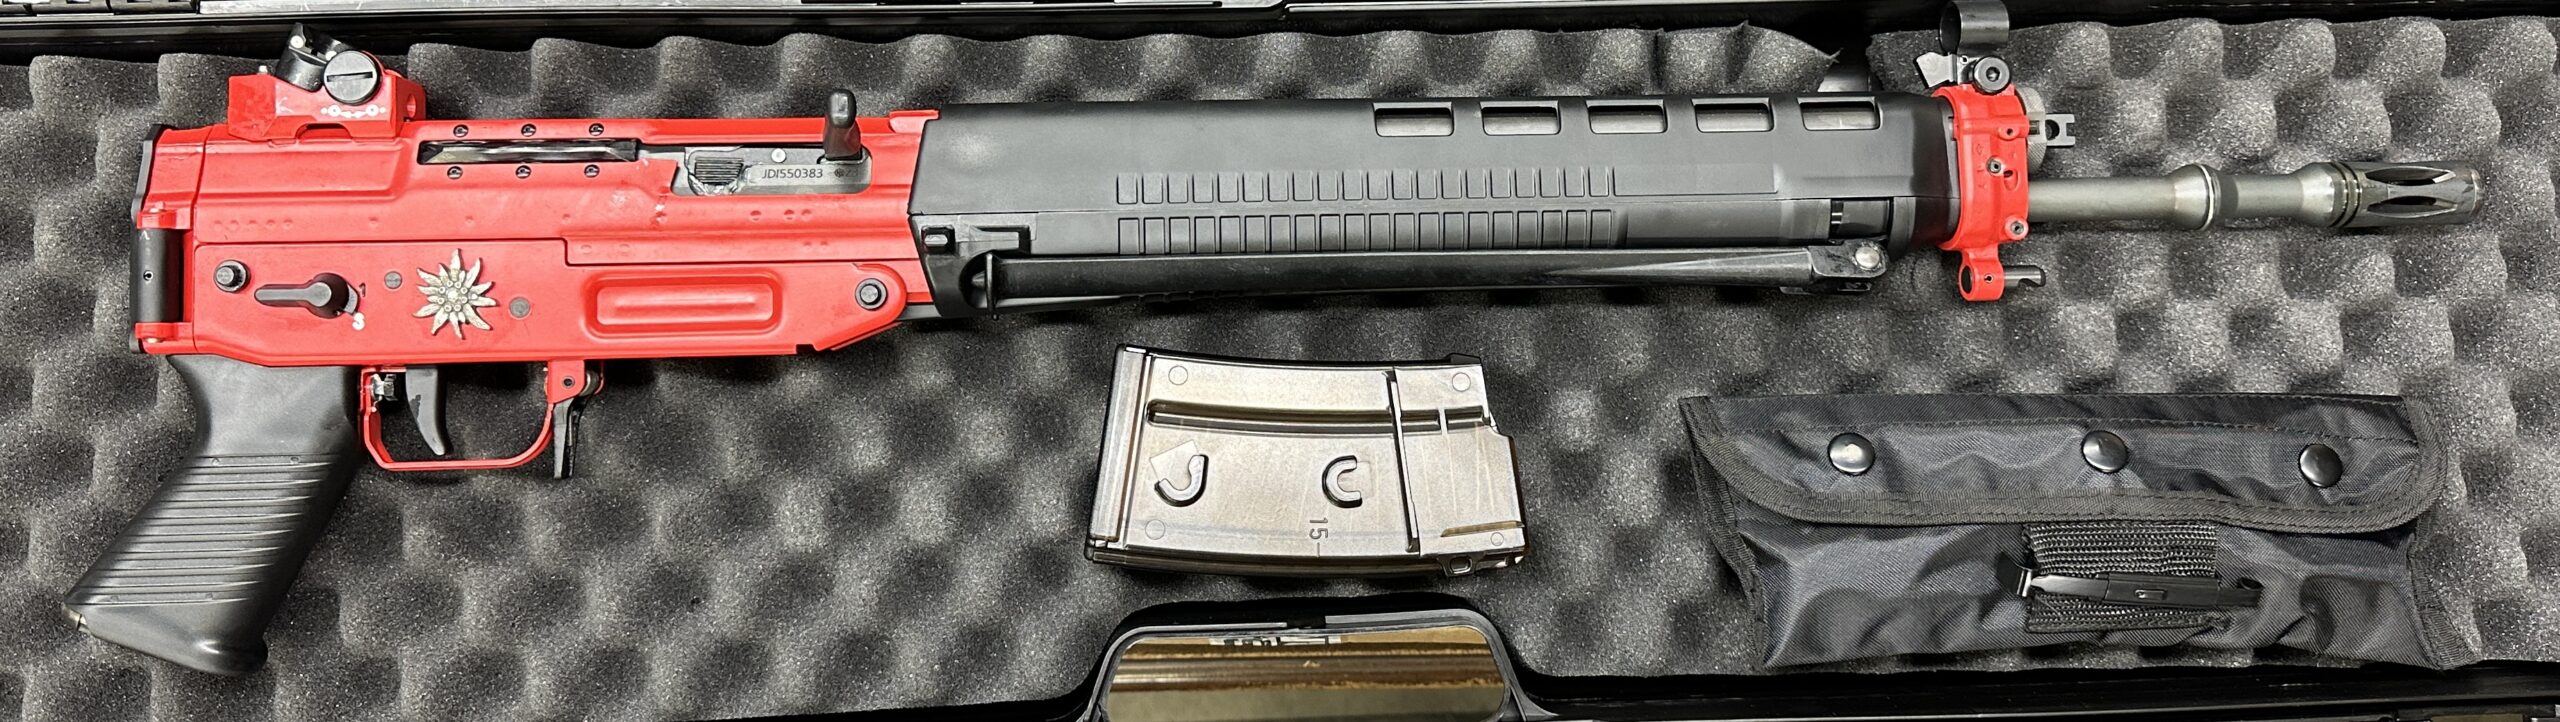 JDI – Firearms, Edelweiss 550/PE90